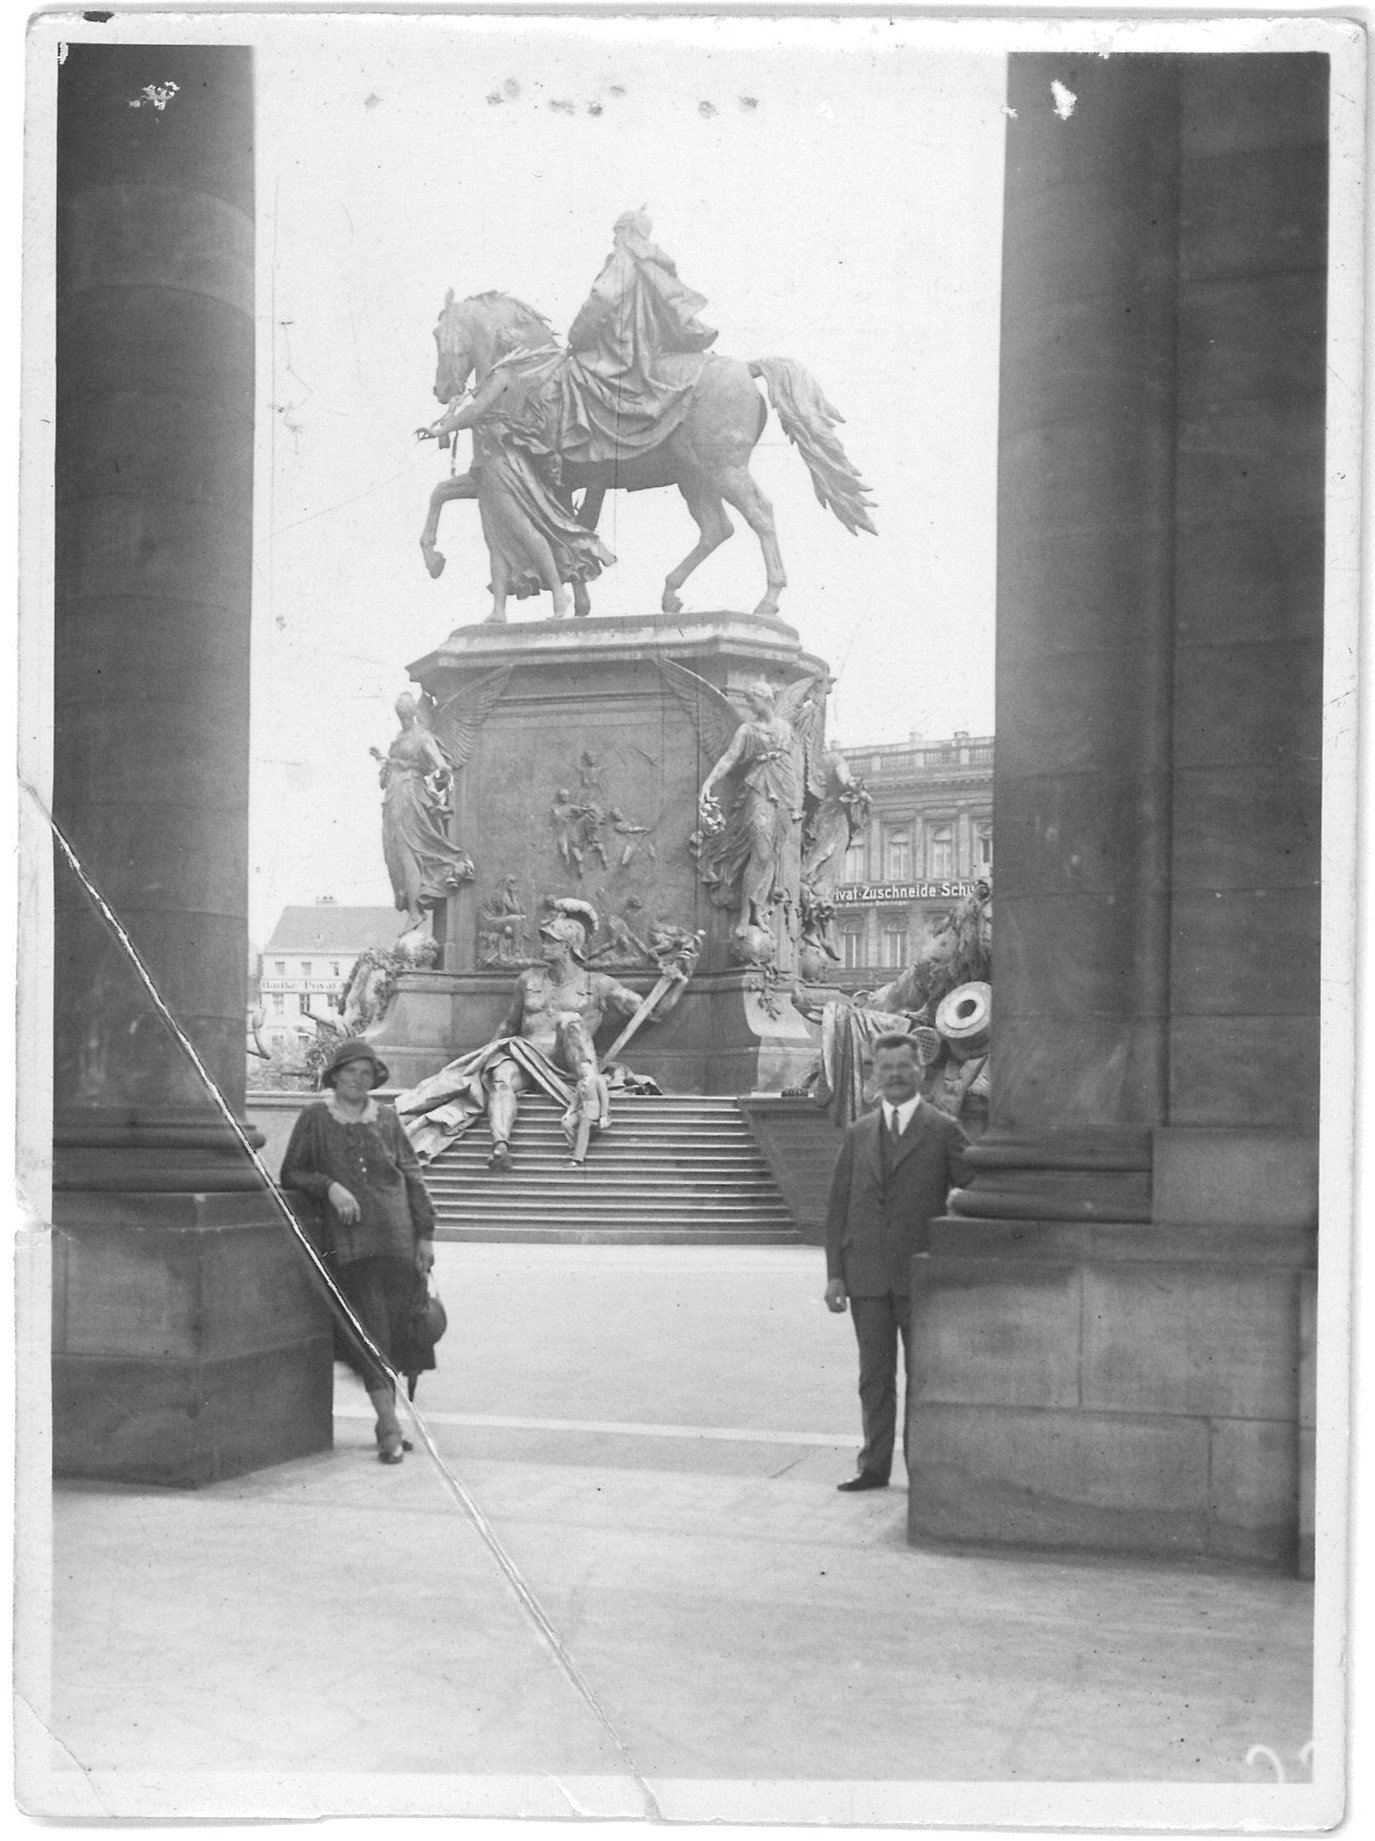 Berlin-Mitte: Ehepaar am Kaiser-Wilhelm-National-Denkmal (Landesgeschichtliche Vereinigung für die Mark Brandenburg e.V., Archiv CC BY)